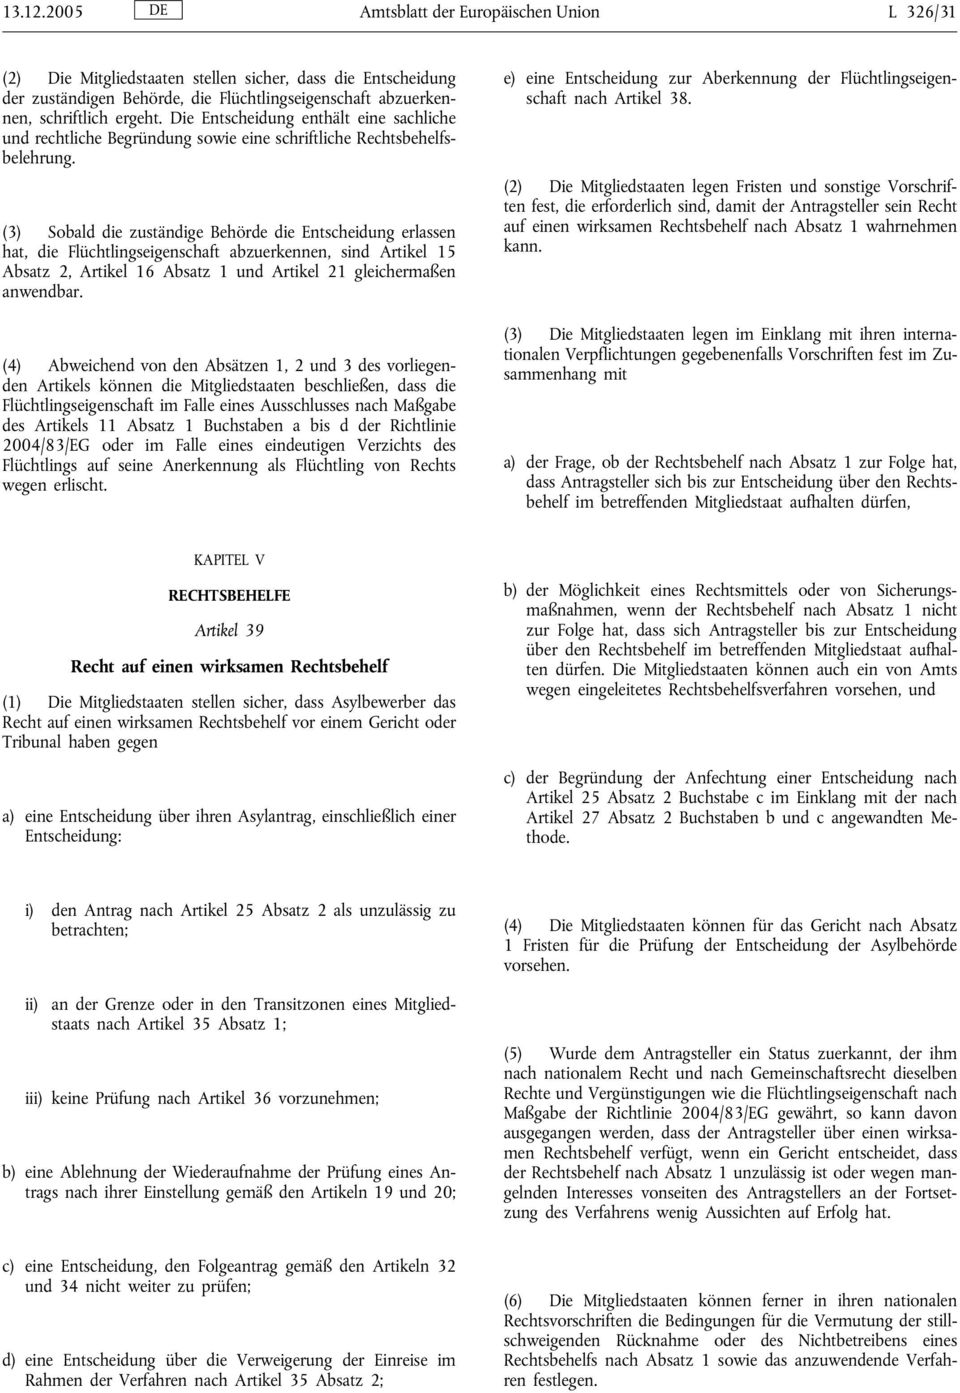 (3) Sobald die zuständige Behörde die Entscheidung erlassen hat, die Flüchtlingseigenschaft abzuerkennen, sind Artikel 15 Absatz 2, Artikel 16 Absatz 1 und Artikel 21 gleichermaßen anwendbar.